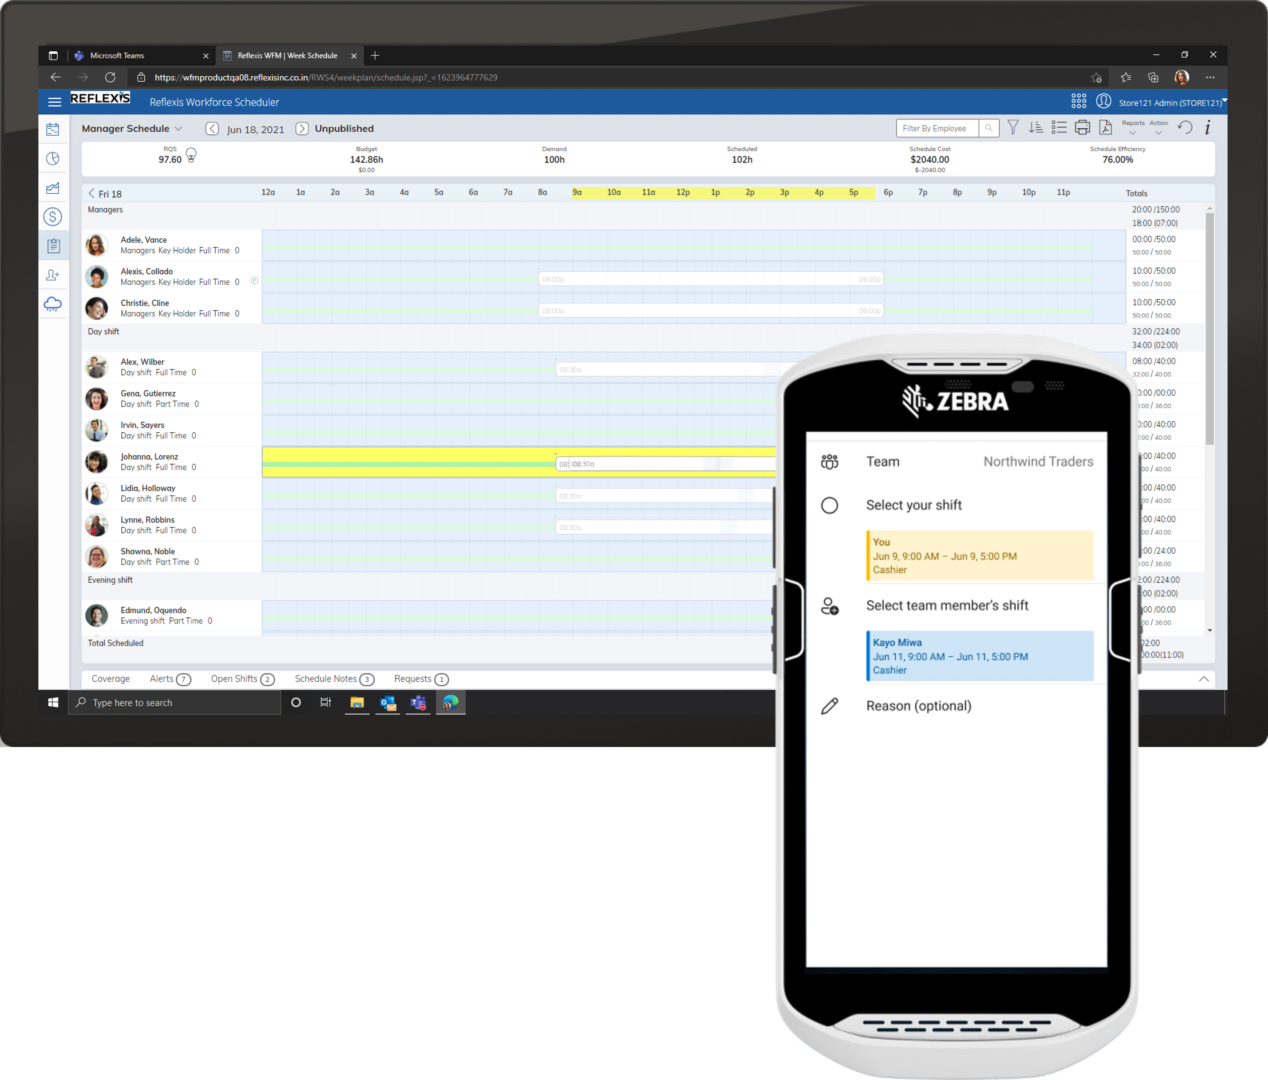 Et nettbrett med skjermbilde fra Zebra Reflexis Workforce Management-systemet, og en mobil enhet med Skift i Teams på en Zebra-enhet, som begge viser den samme informasjonen om skiftbytte. 